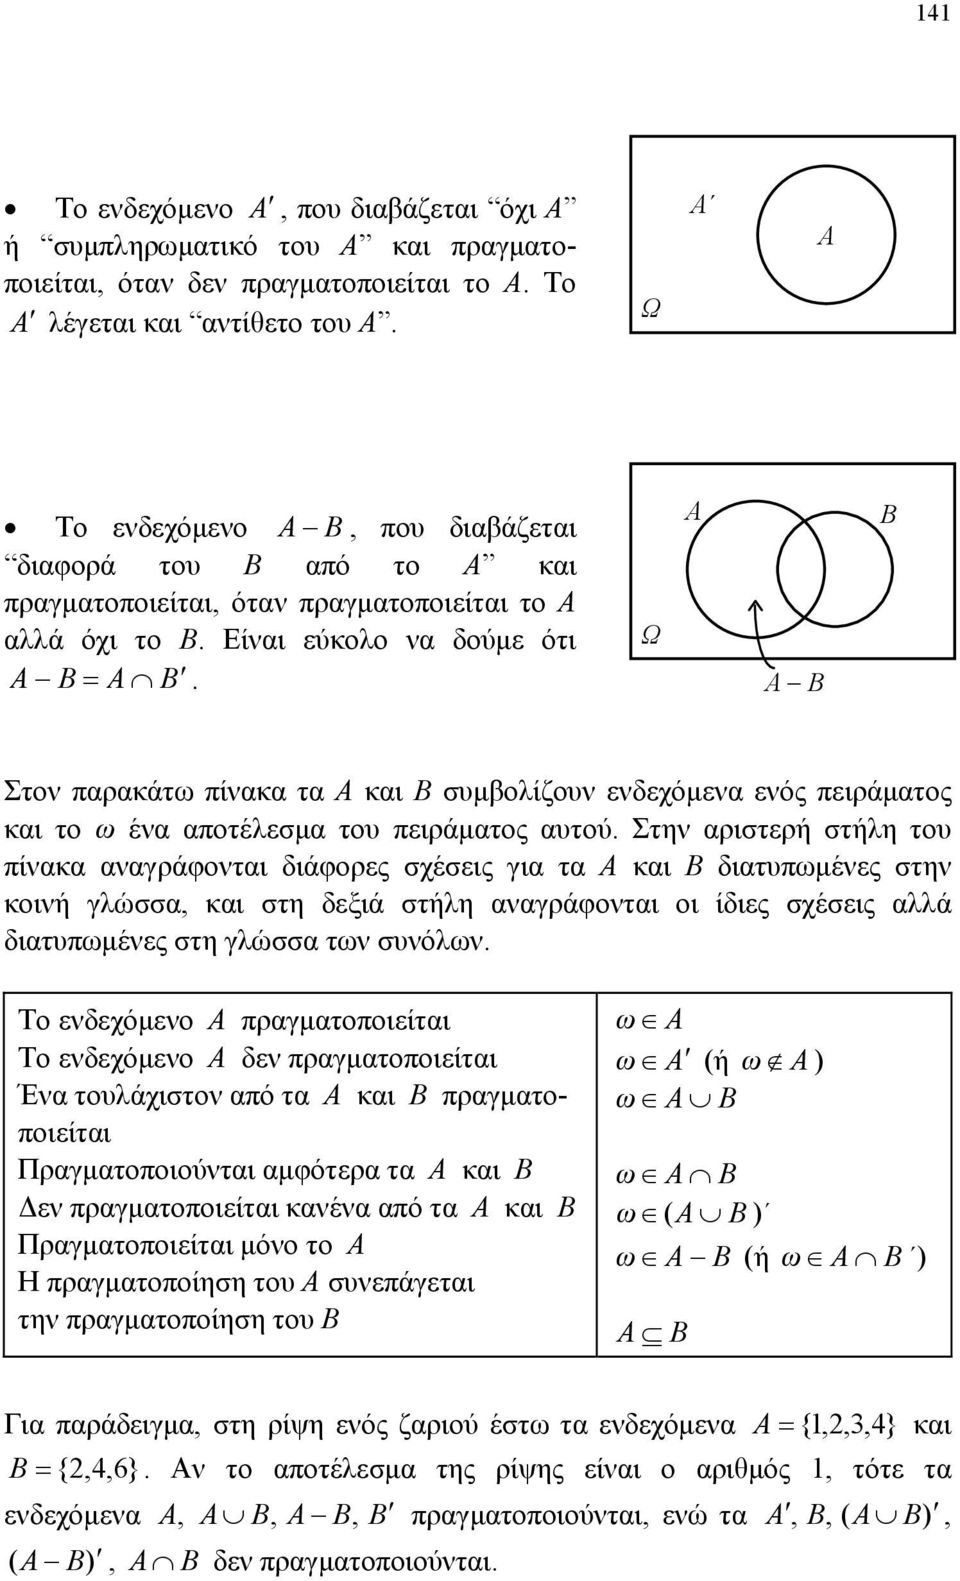 πειράματος αυτού Στην αριστερή στήλη του πίνακα αναγράφονται διάφορες σχέσεις για τα Α και Β διατυπωμένες στην κοινή γλώσσα, και στη δεξιά στήλη αναγράφονται οι ίδιες σχέσεις αλλά διατυπωμένες στη